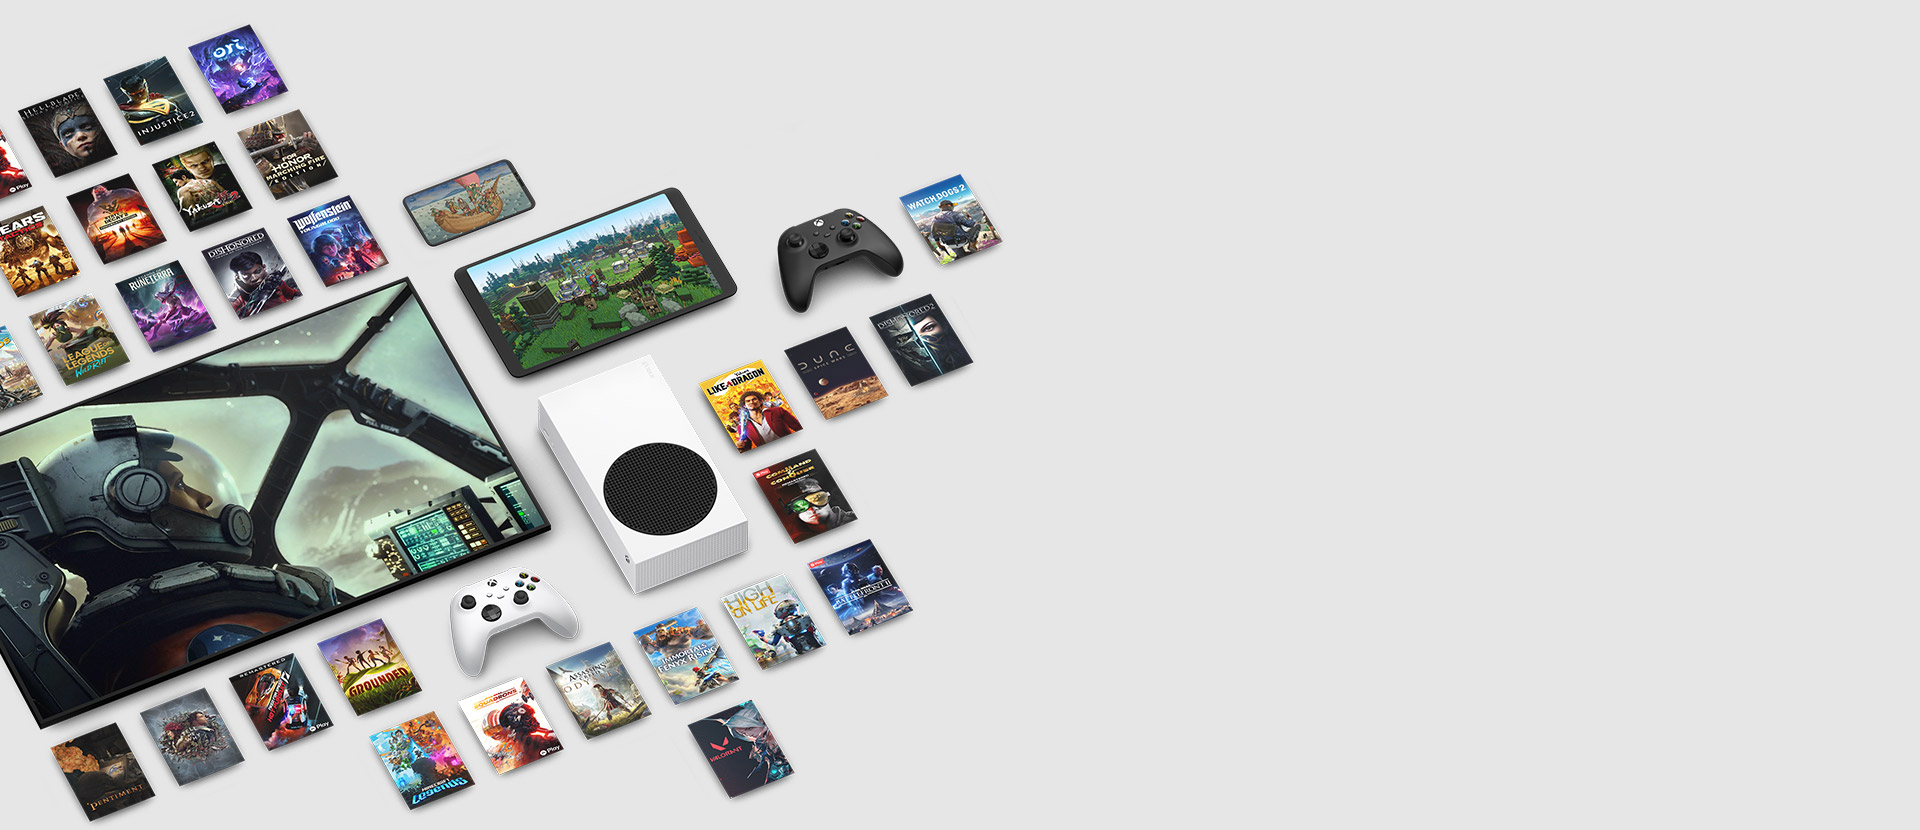 Grafika z viacerých hier dostupných s predplatným Xbox Game Pass Ultimate, ktorú lemujú viaceré zariadenia vrátane konzoly, mobilného telefónu, tabletu, inteligentného televízora a ovládačov.